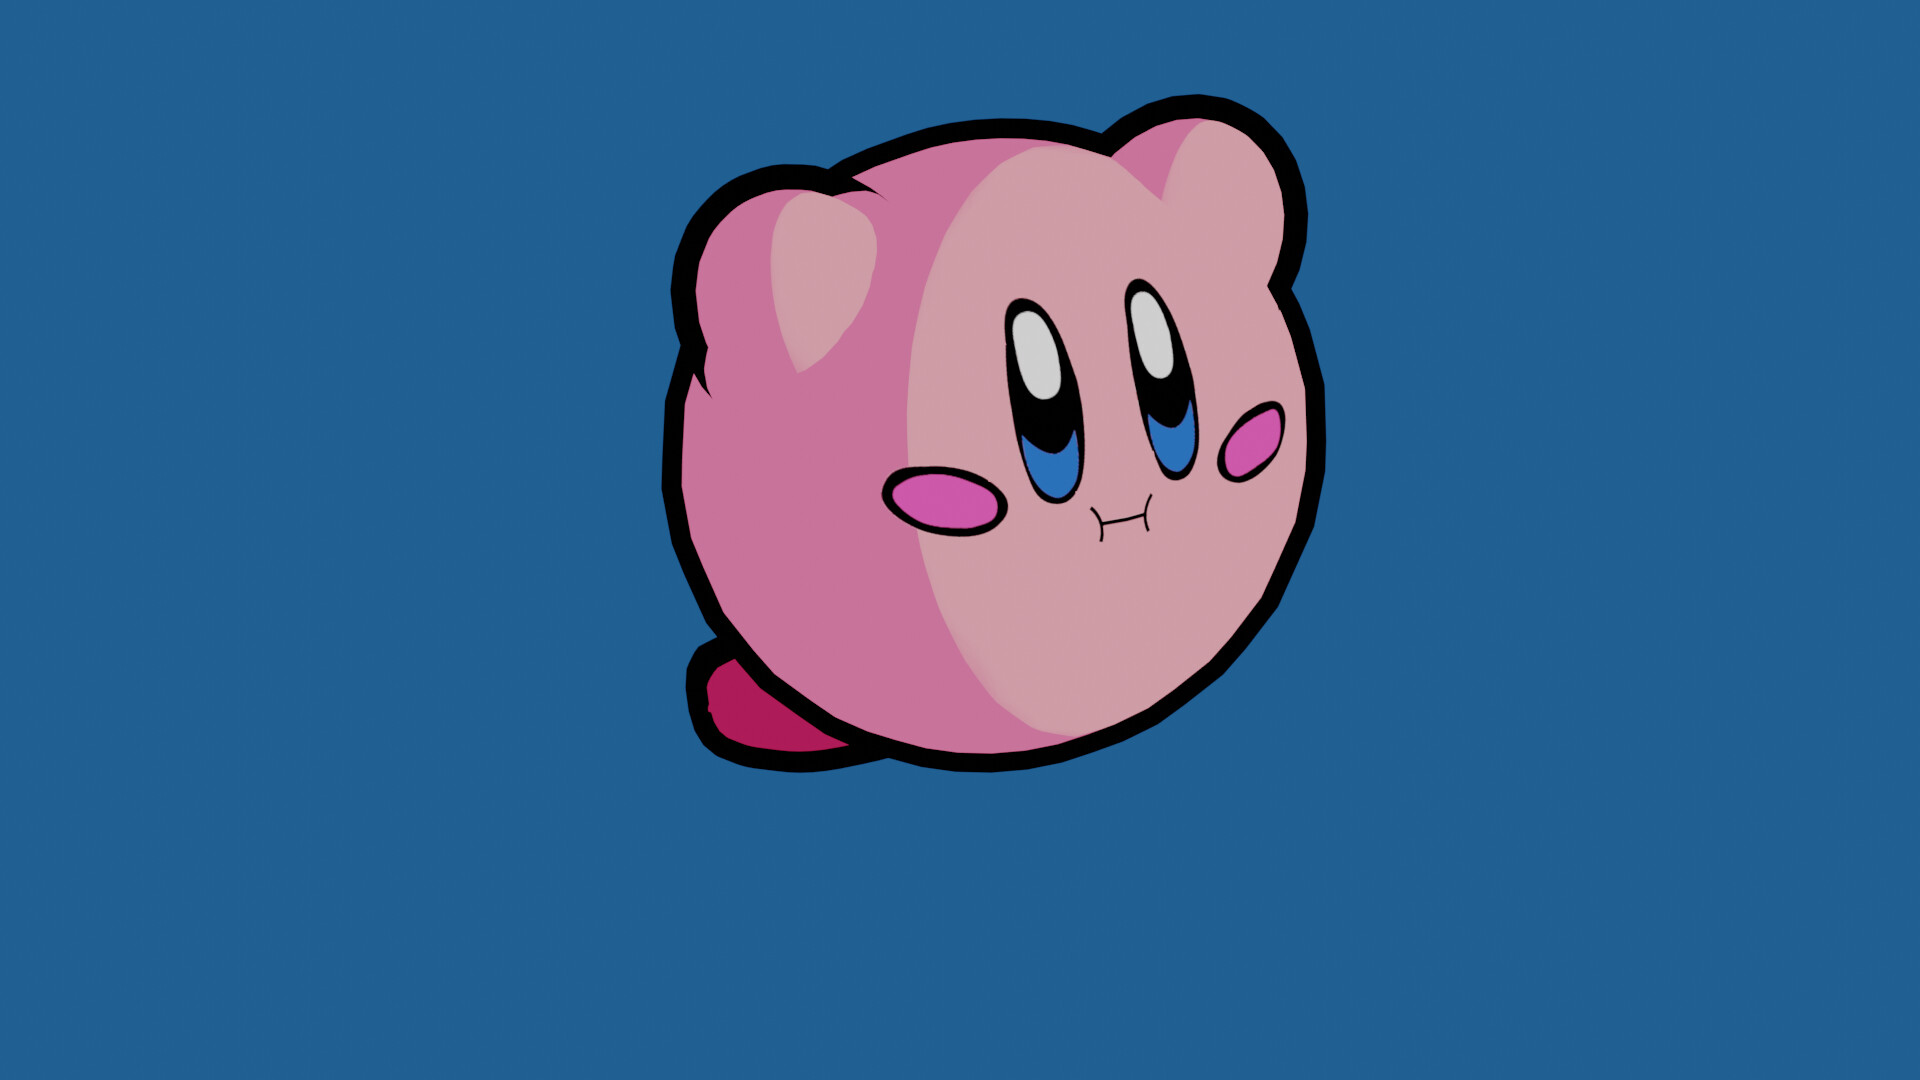 ArtStation - Kirby - Blender